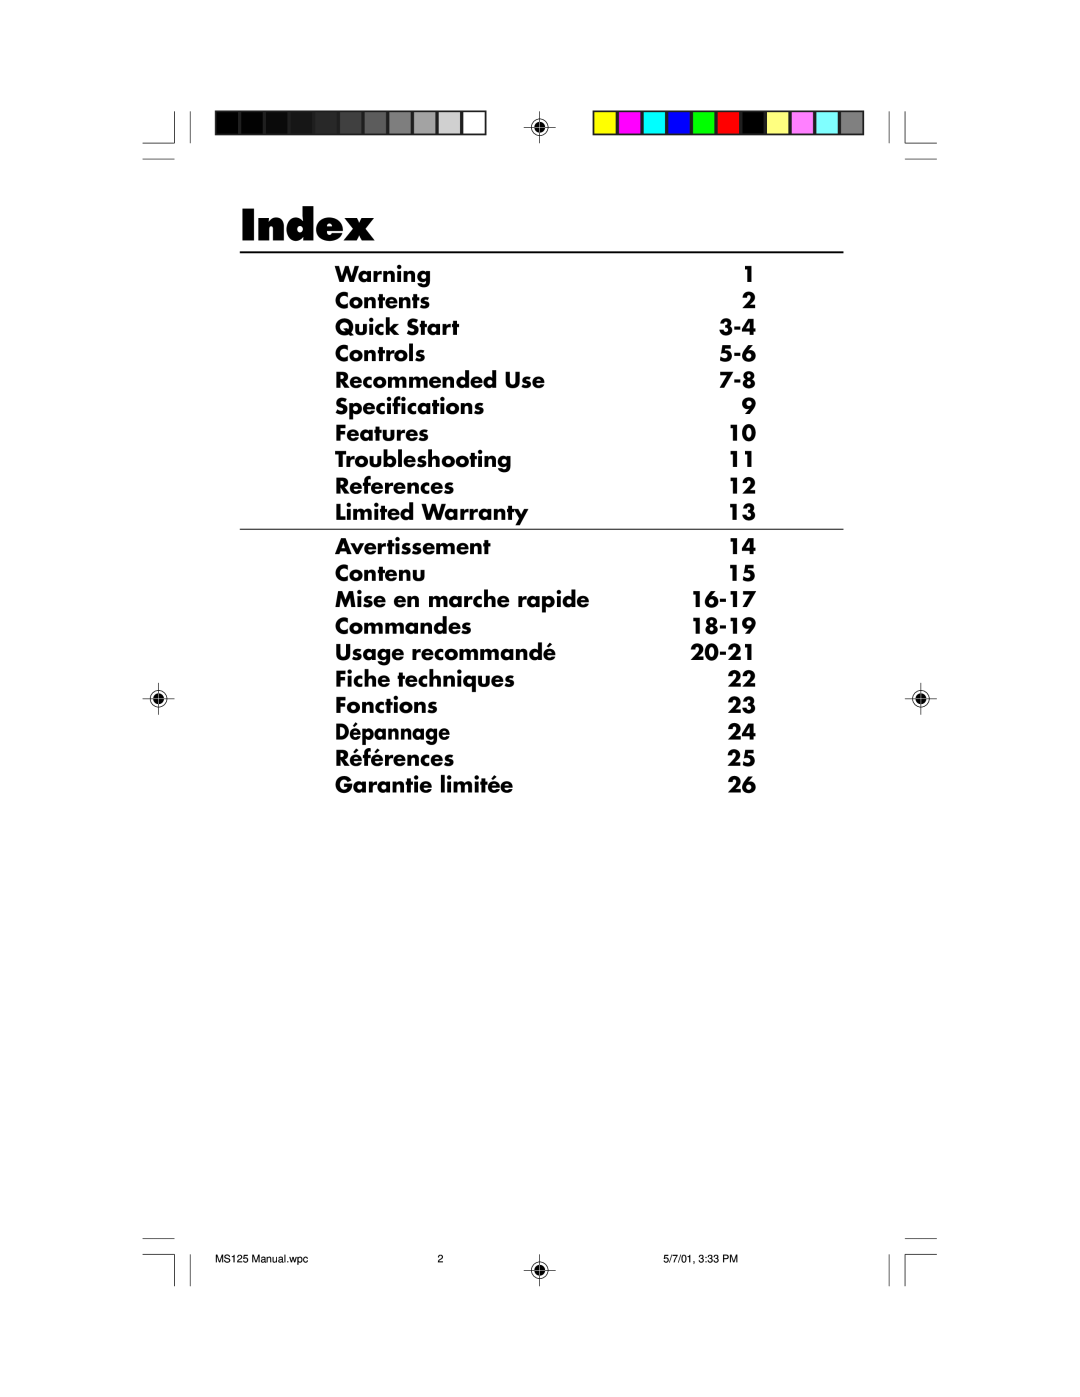 NEC MS125 manual Index 